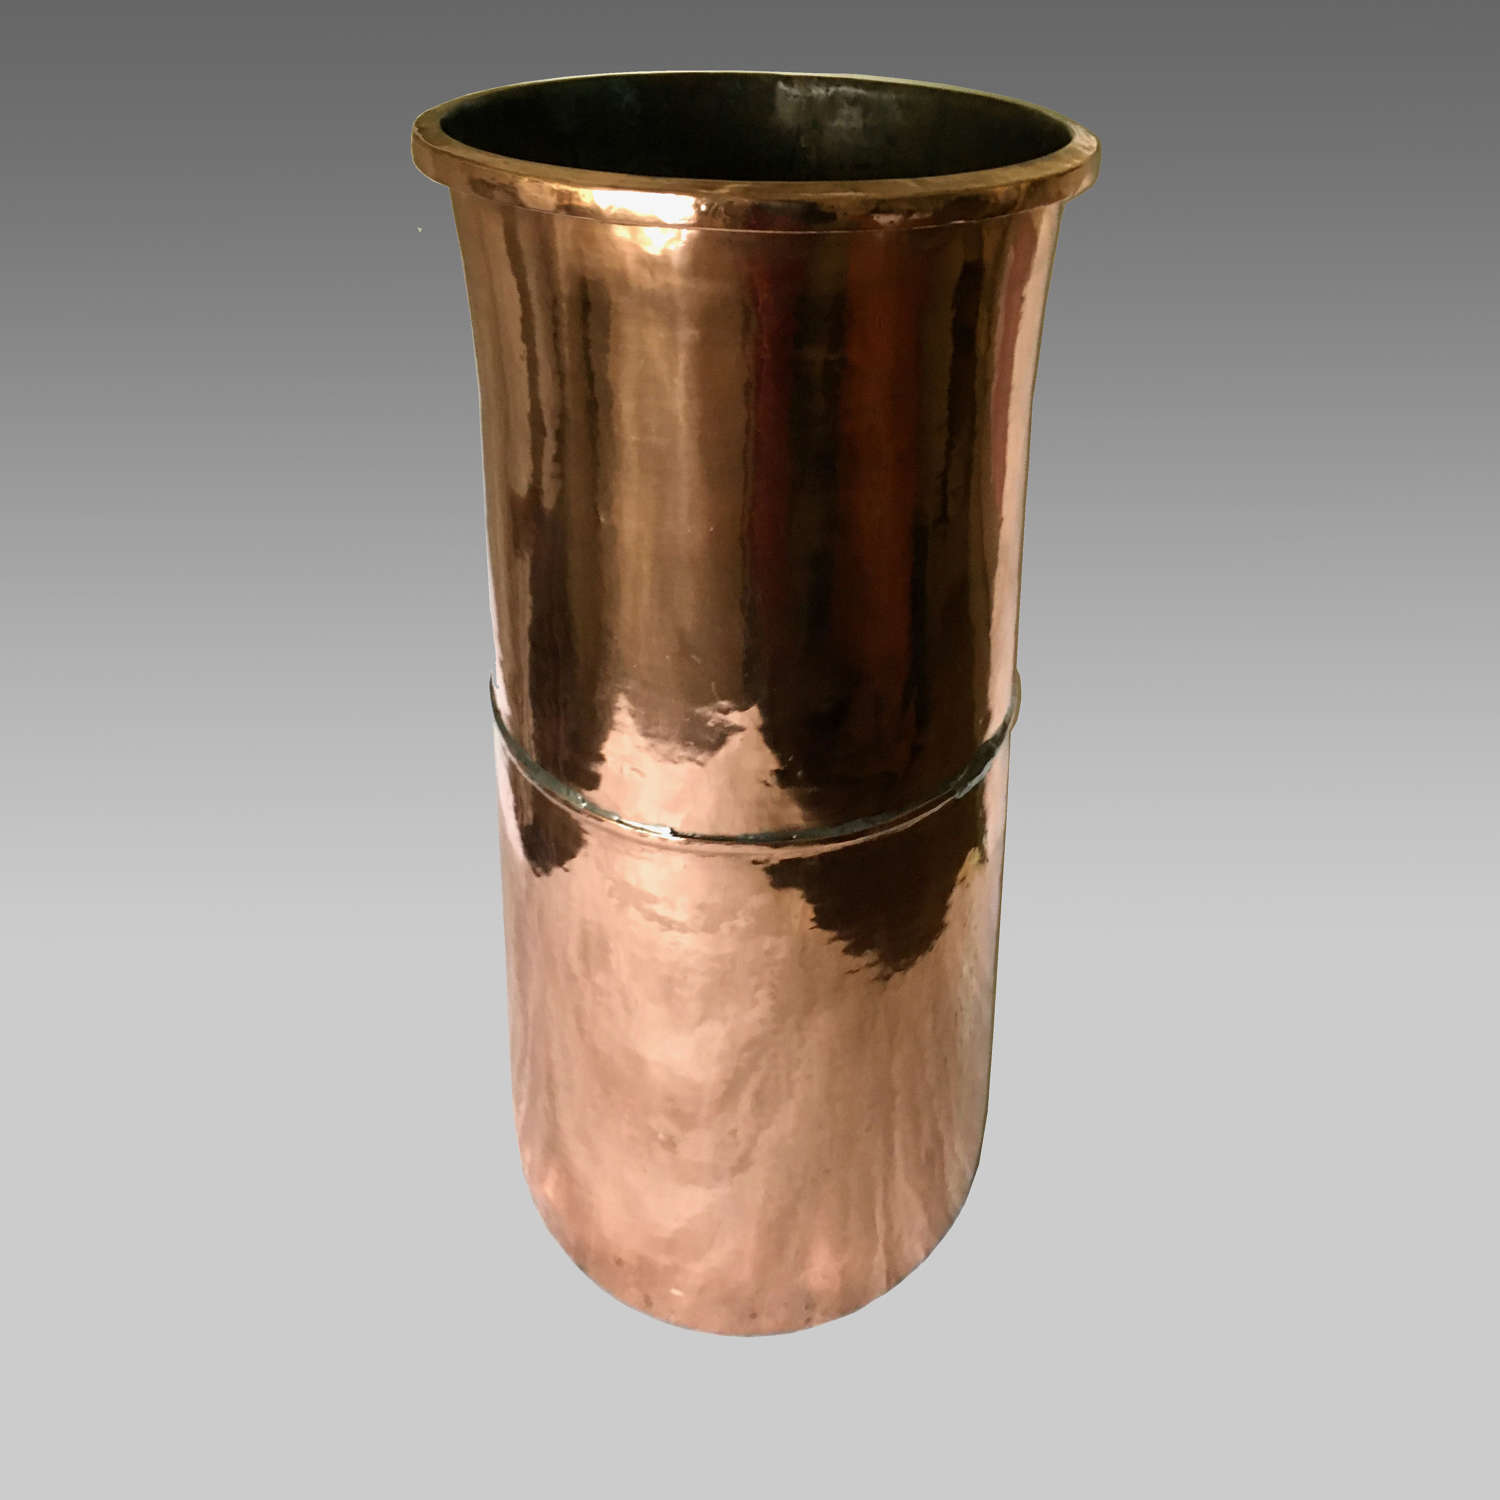 19th century tall copper pot